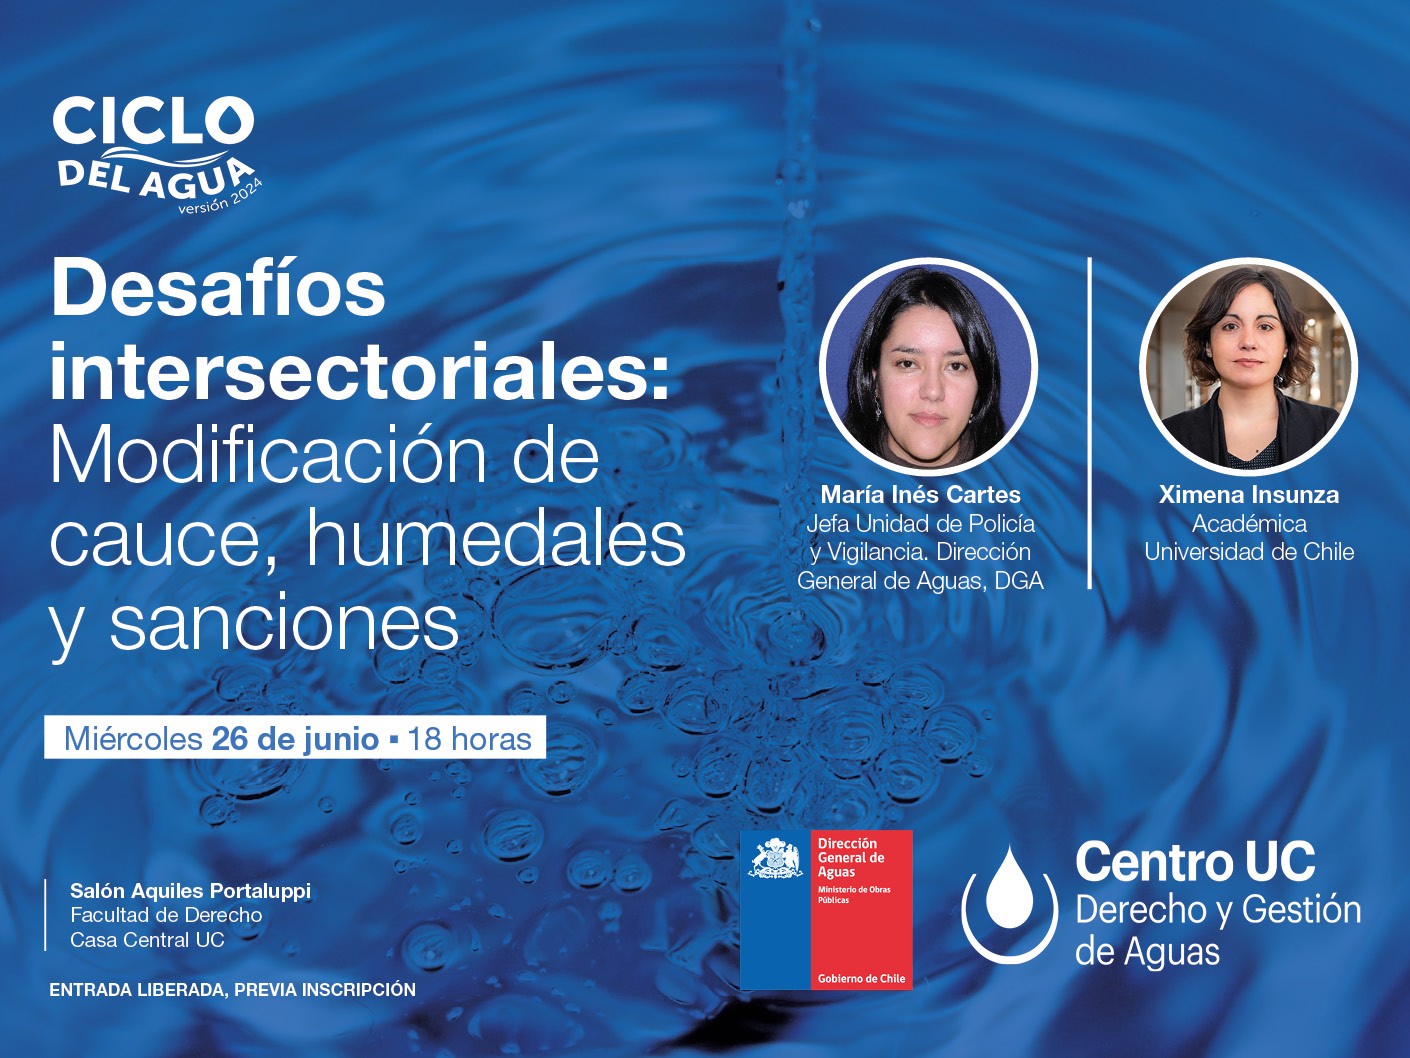 Ciclo del agua: Desafíos intersectoriales: Modificación de cauce, humedales y sanciones